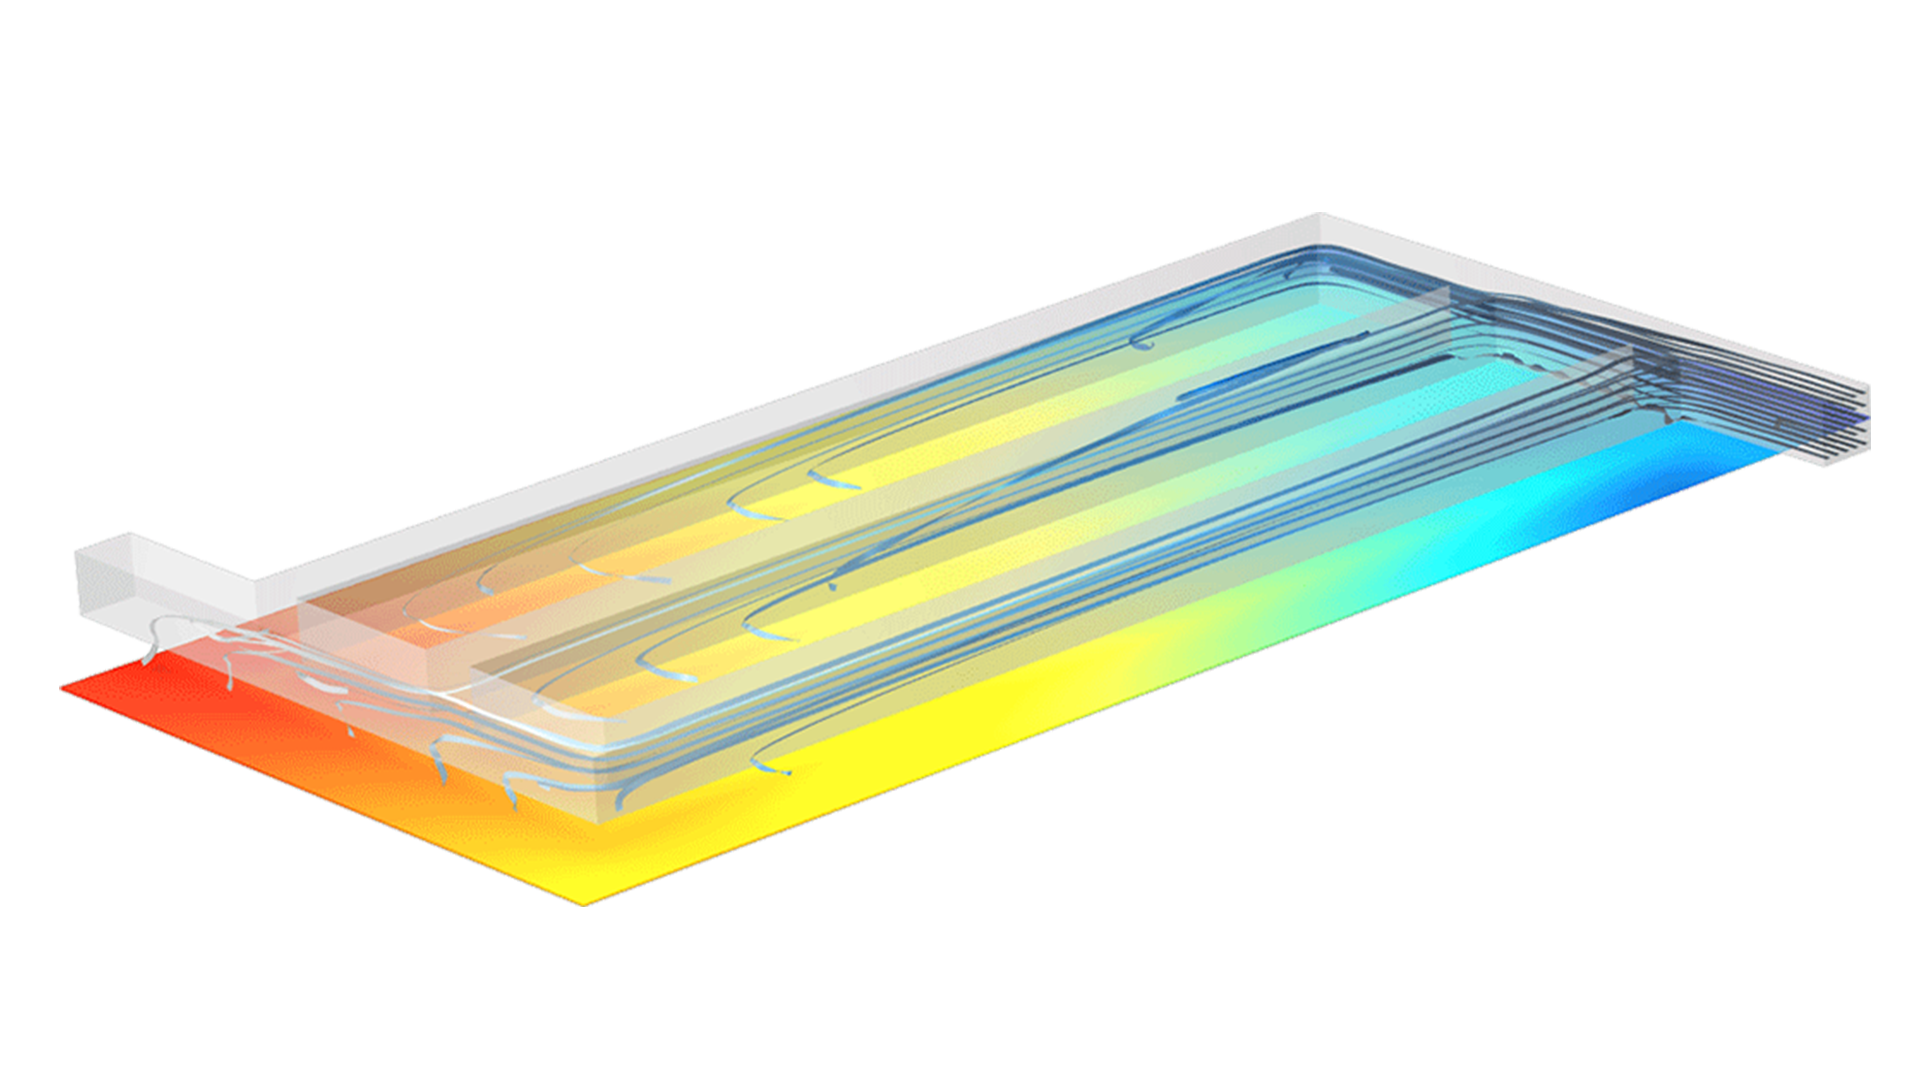 Для визуализации распределение плотности тока в модели твёрдооксидного электролизера используется радужная цветовая палитра Rainbow, а линии тока для потока массы водорода визуализируются с помощью цветового градиента от темносинего до белого.